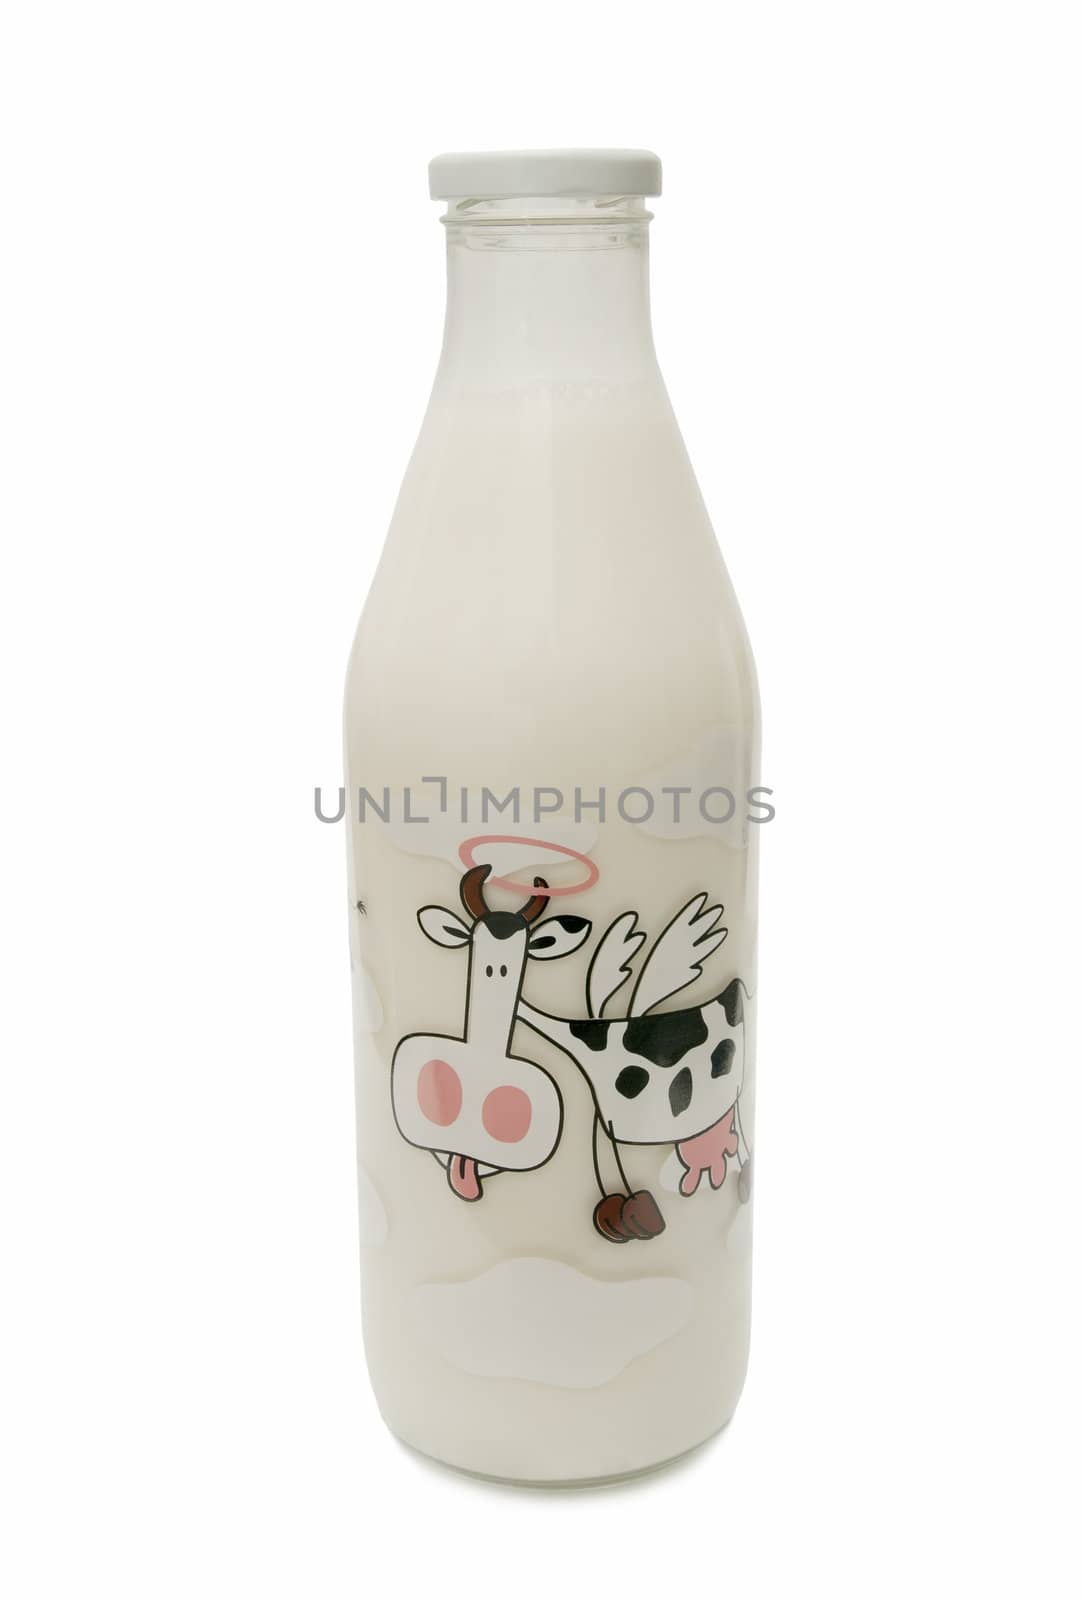 milk bottle isolated on white background